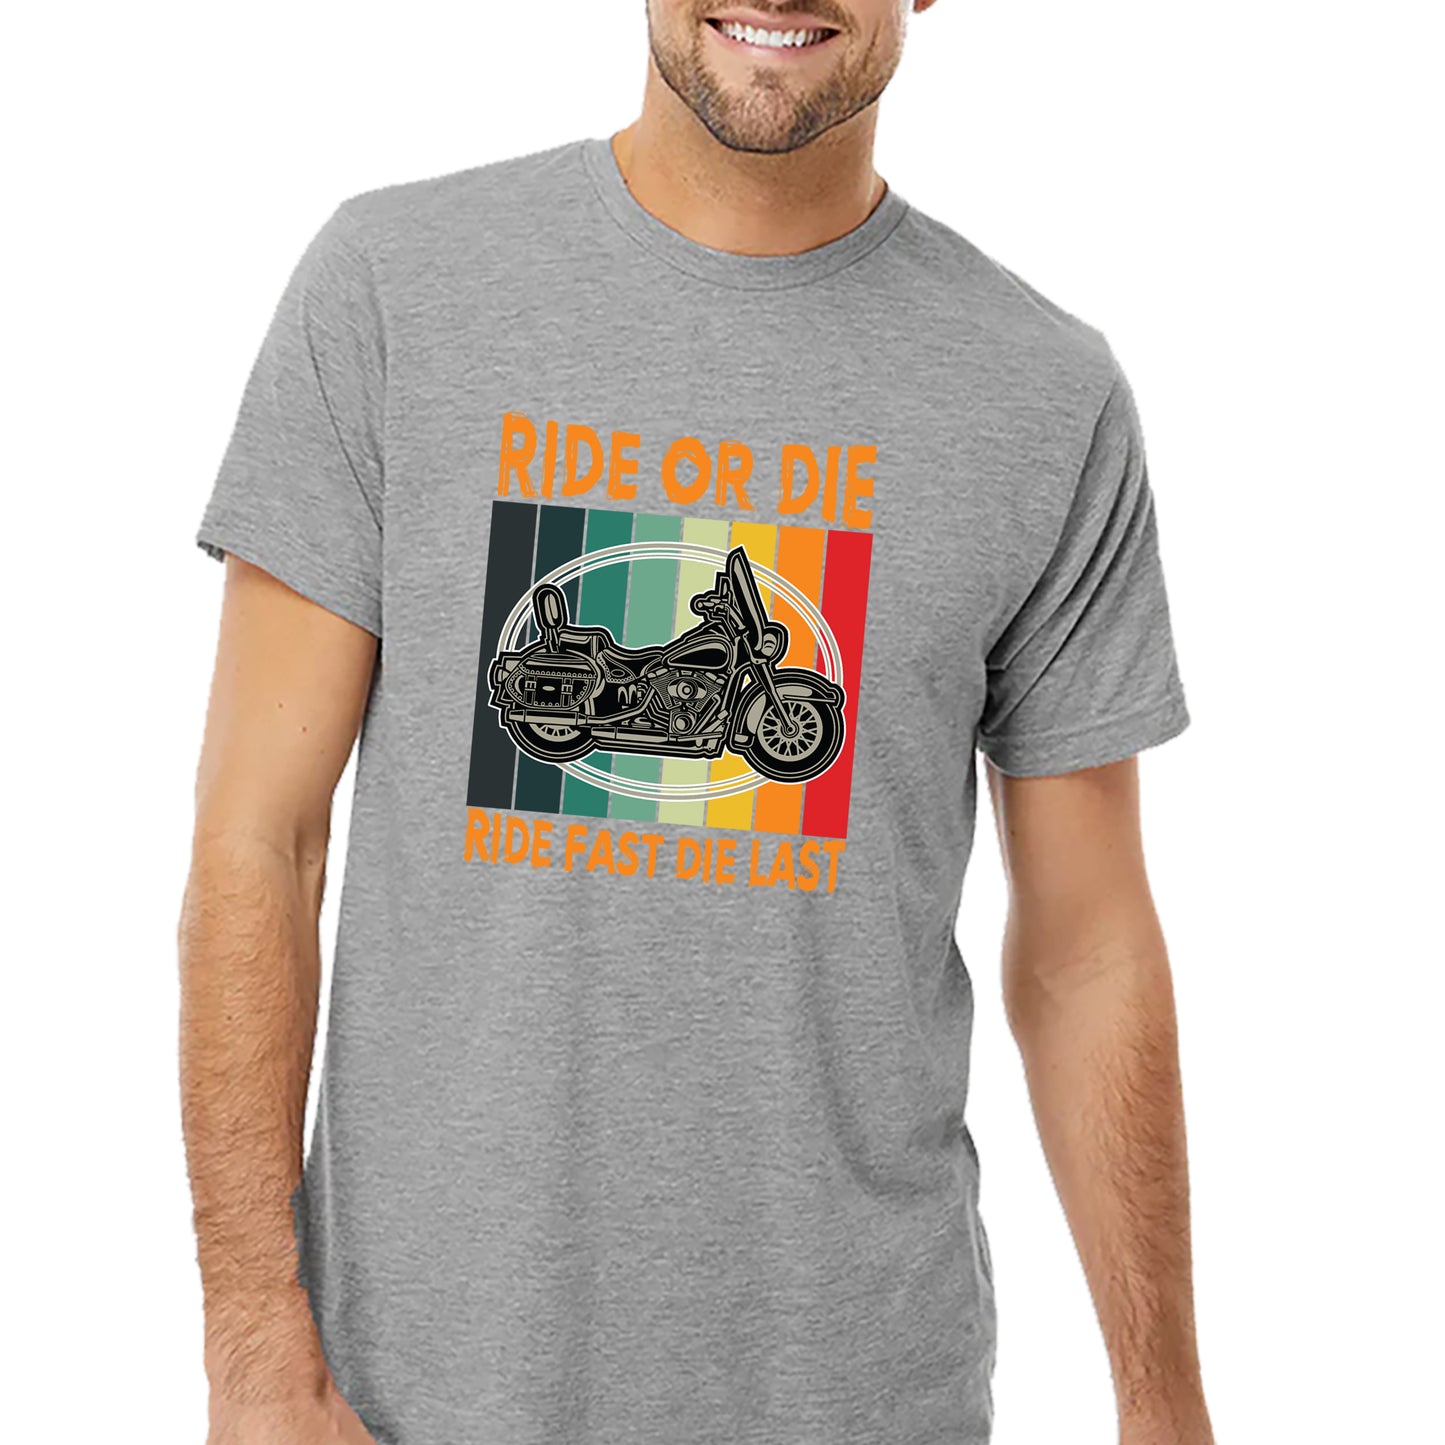 Ride Or Die T-shirt